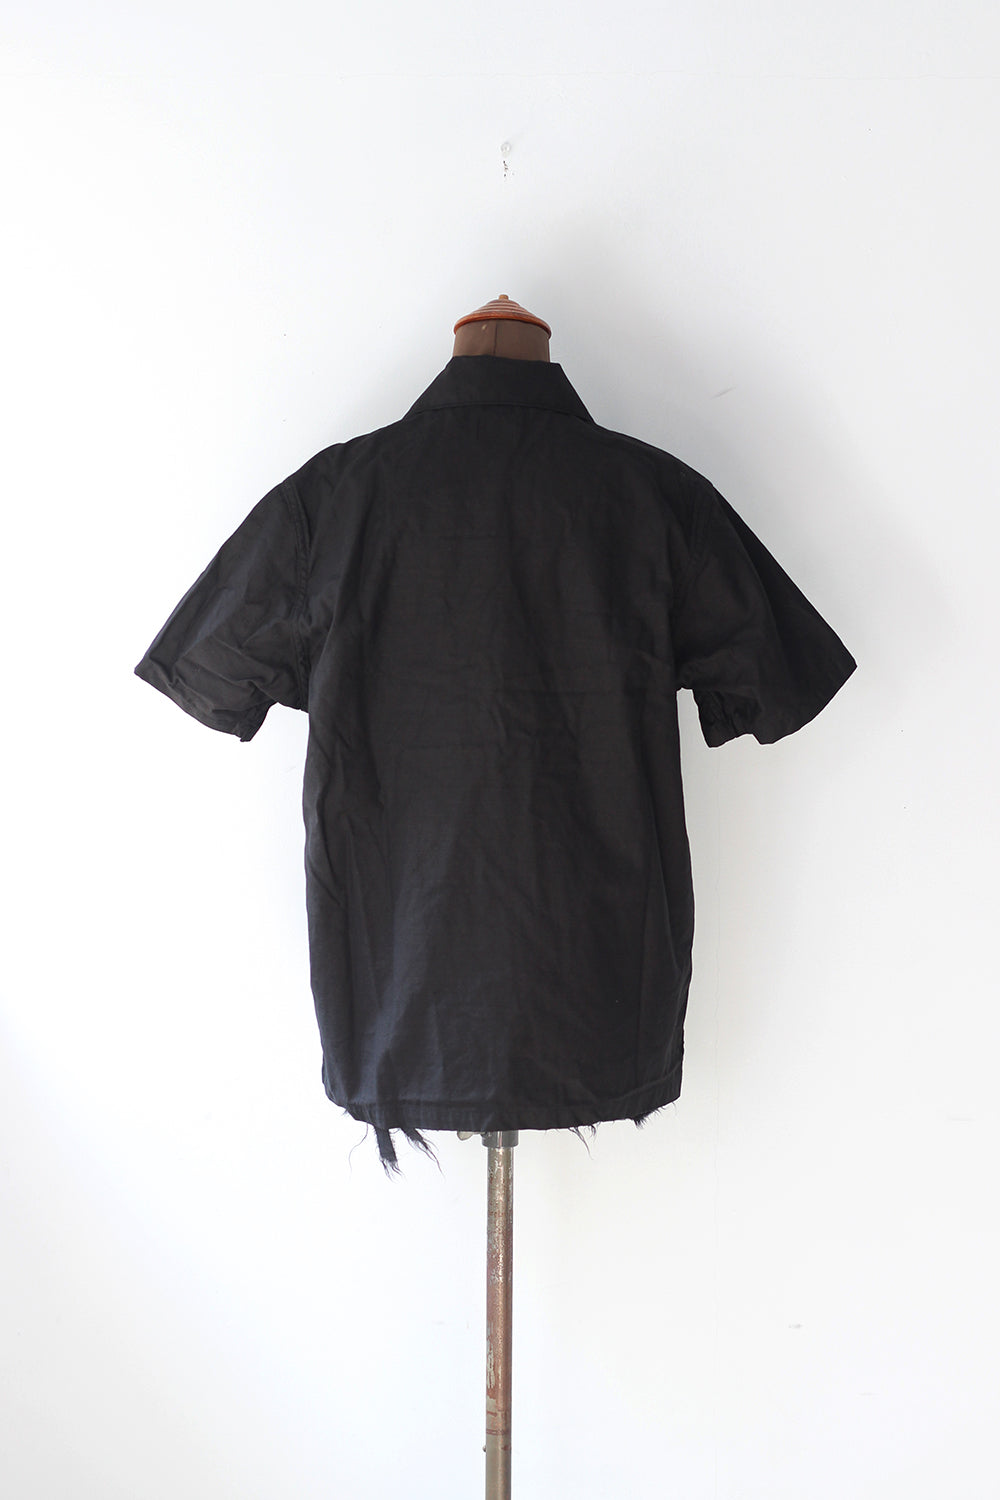 Needles "Fatigue Shirt - Backsateen" (black)